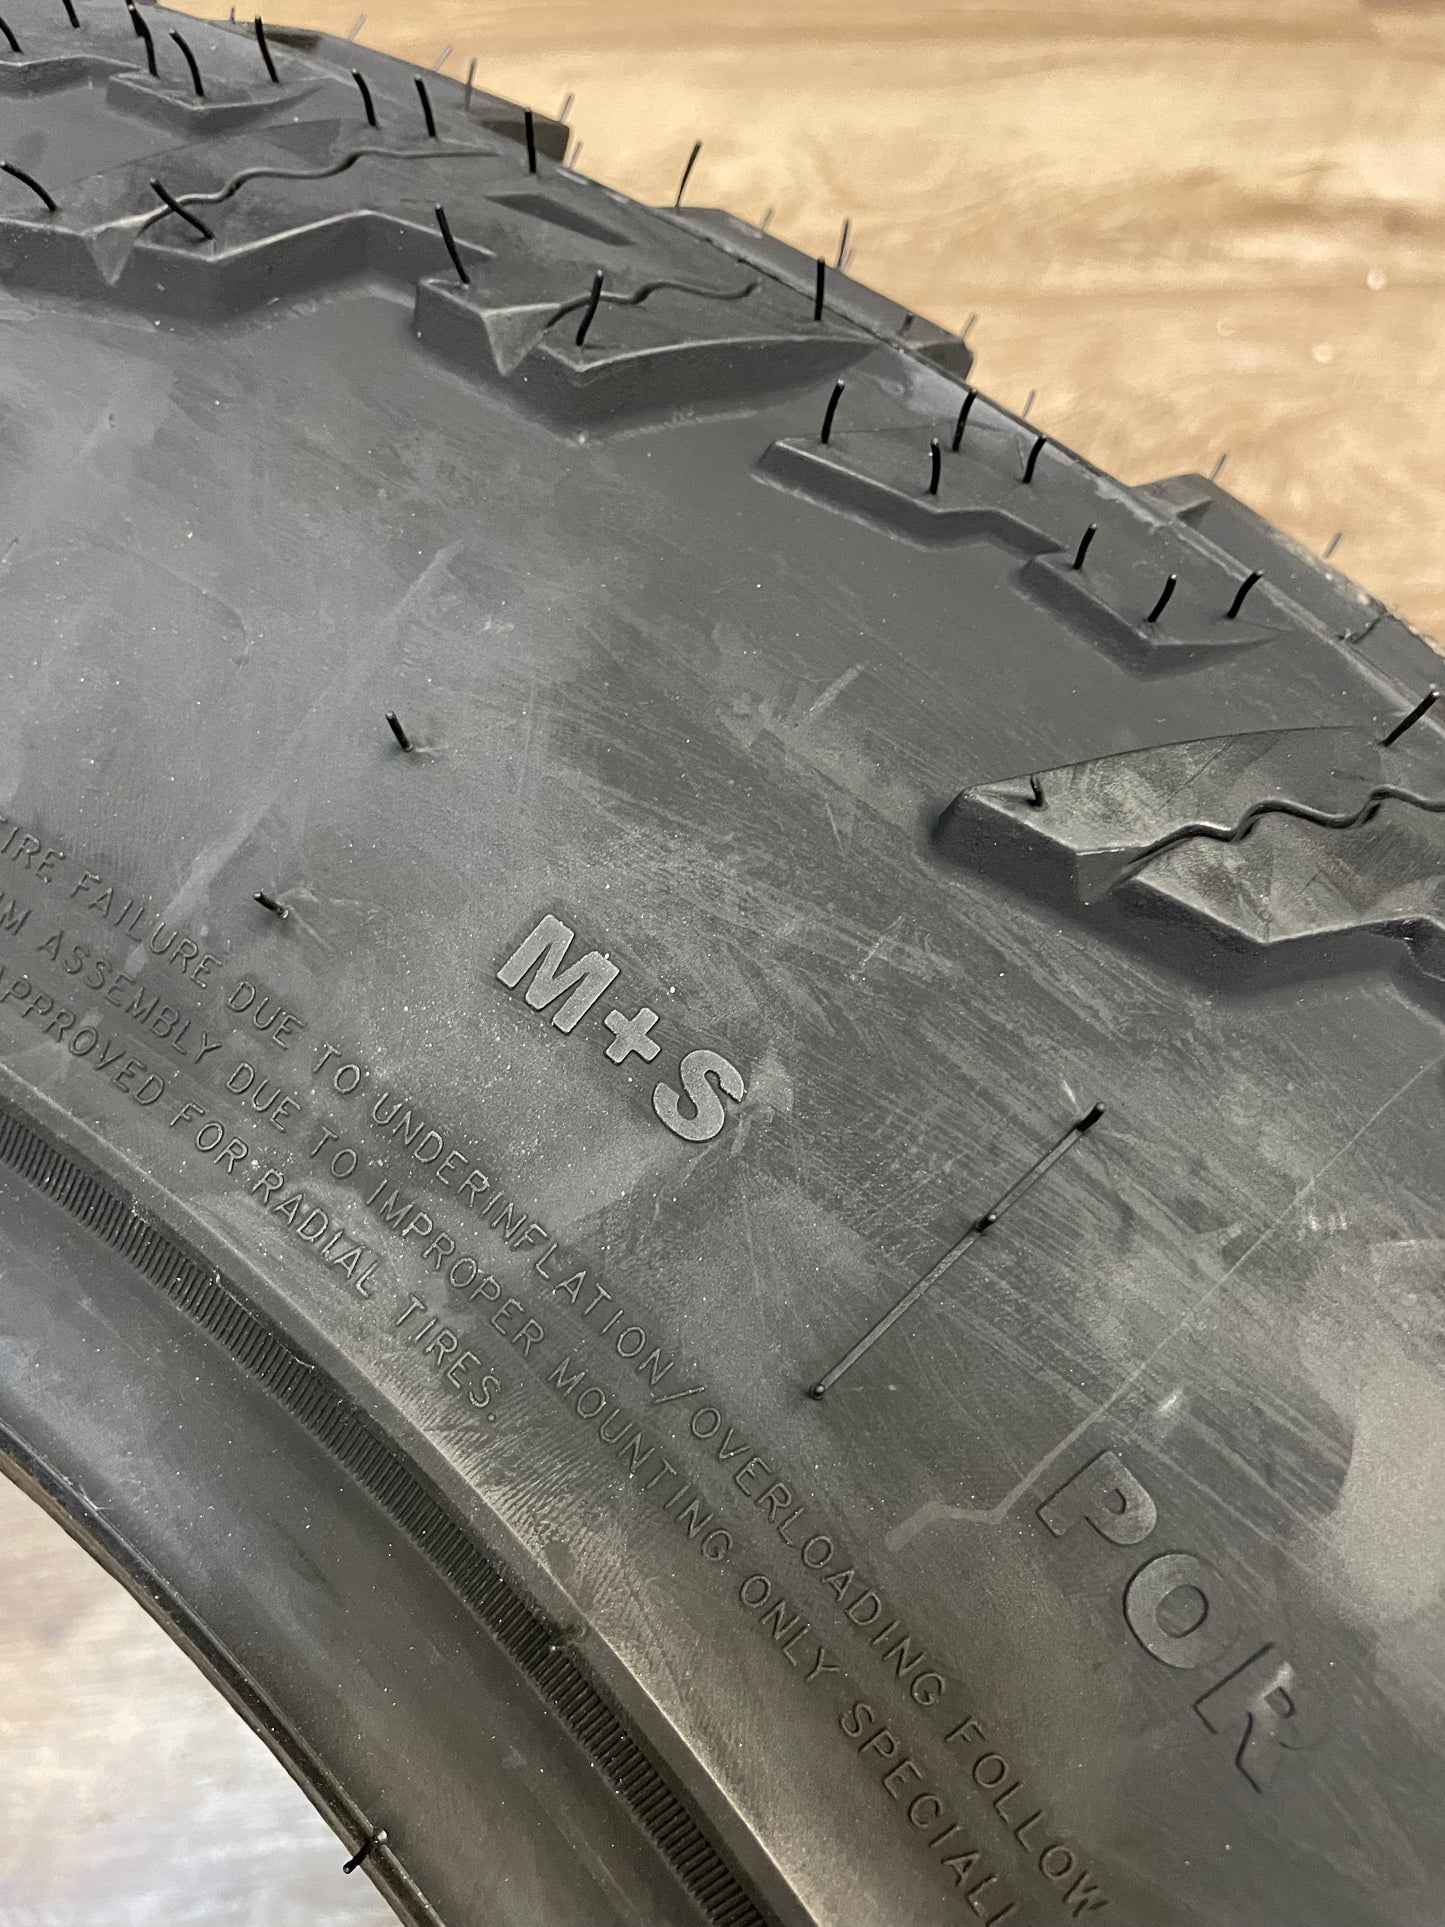 LT 37x12.5x22 Amp TERRAIN ATTACK M/T F Mud All Season Tires